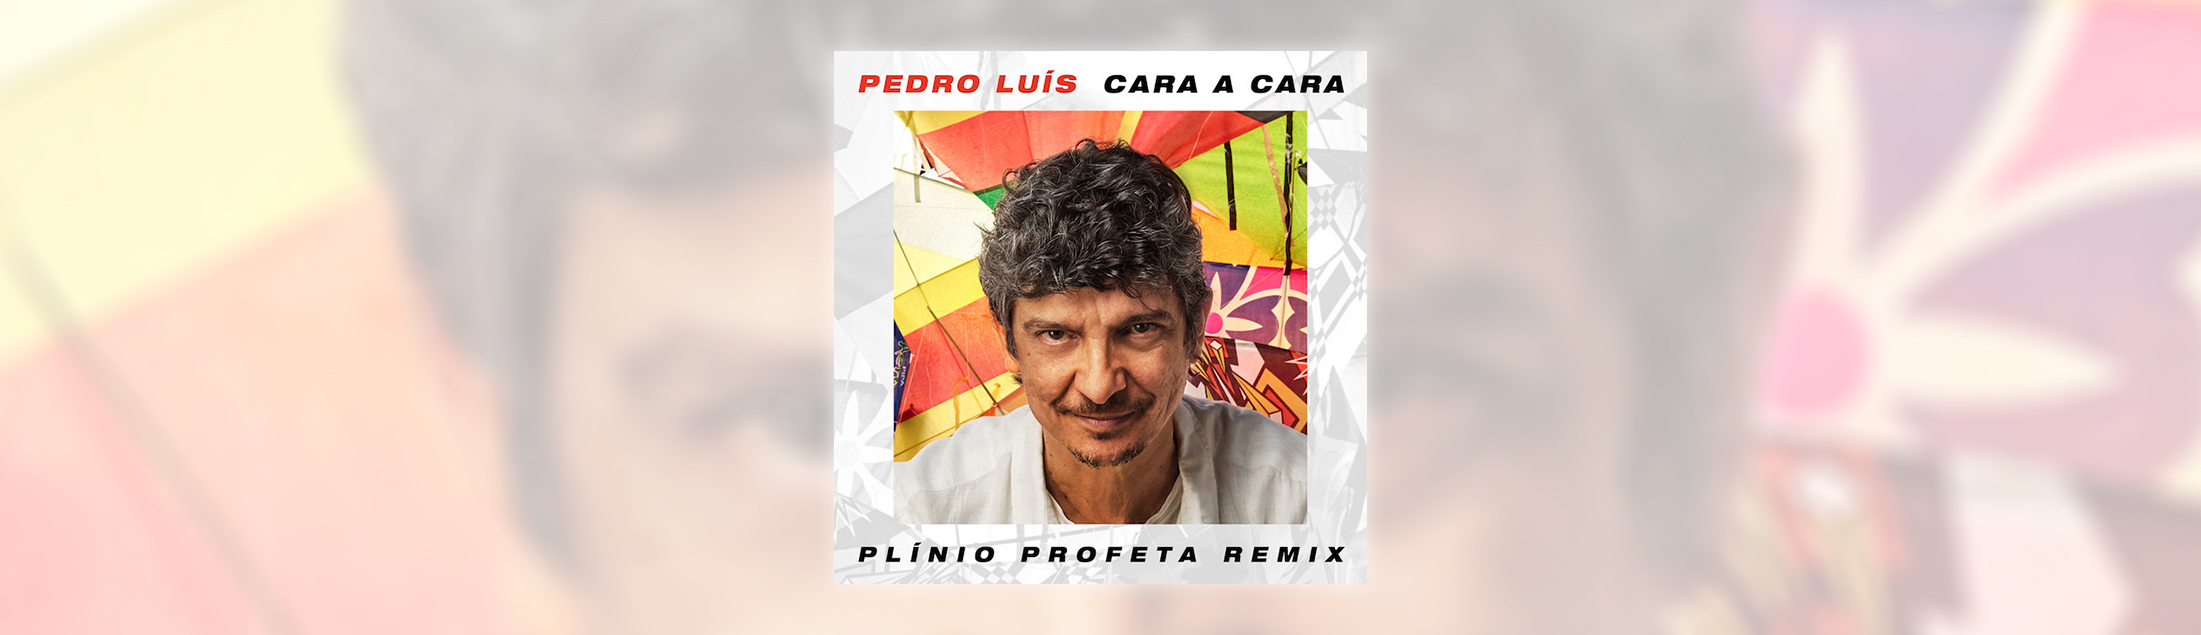 Pedro Luís e Plinio Profeta lançam remix de 'Cara a Cara', de Luiz Melodia